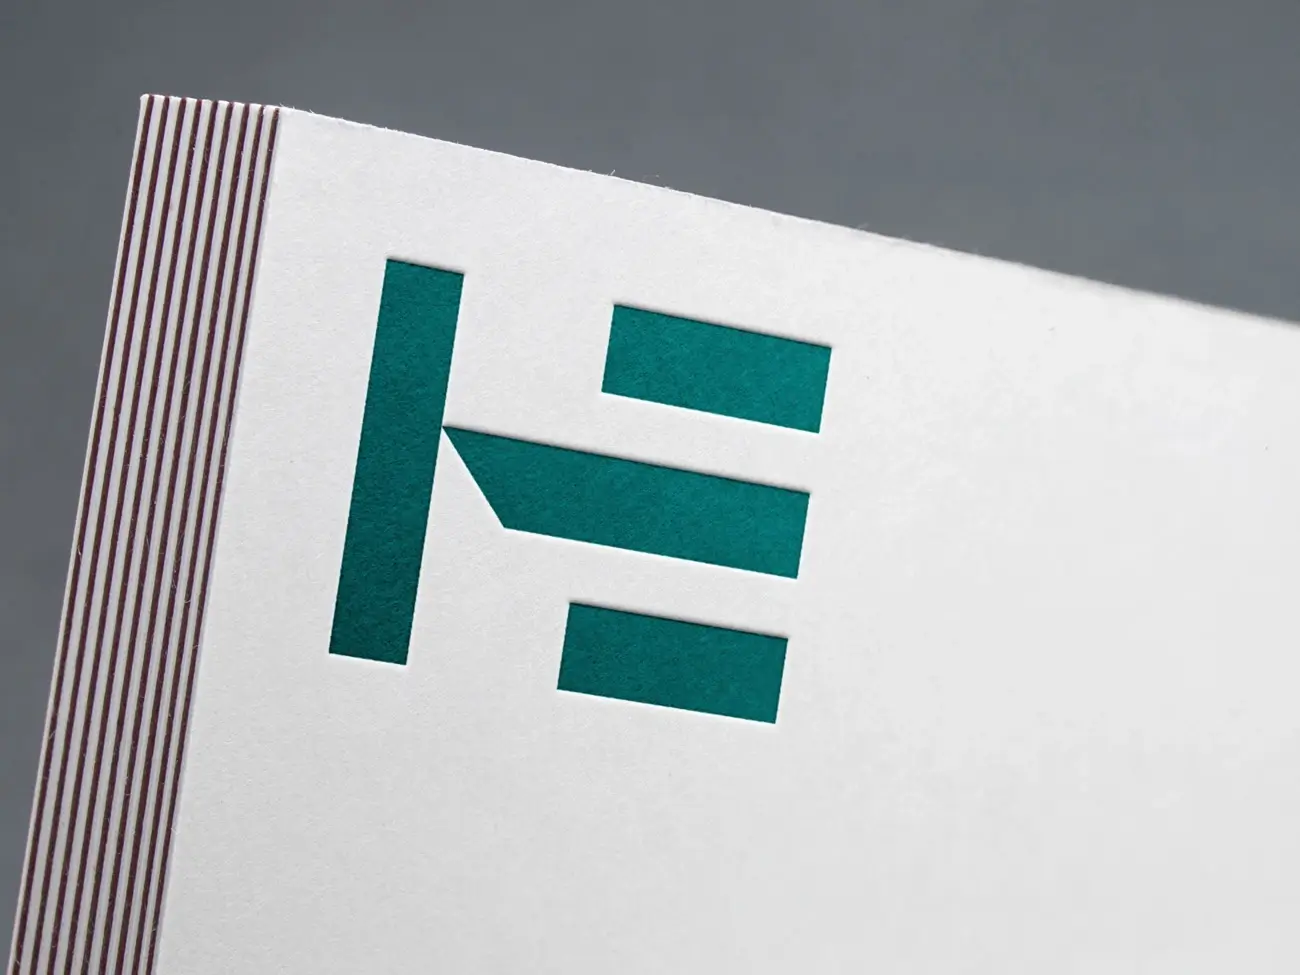 Hede entreprise firma logo design